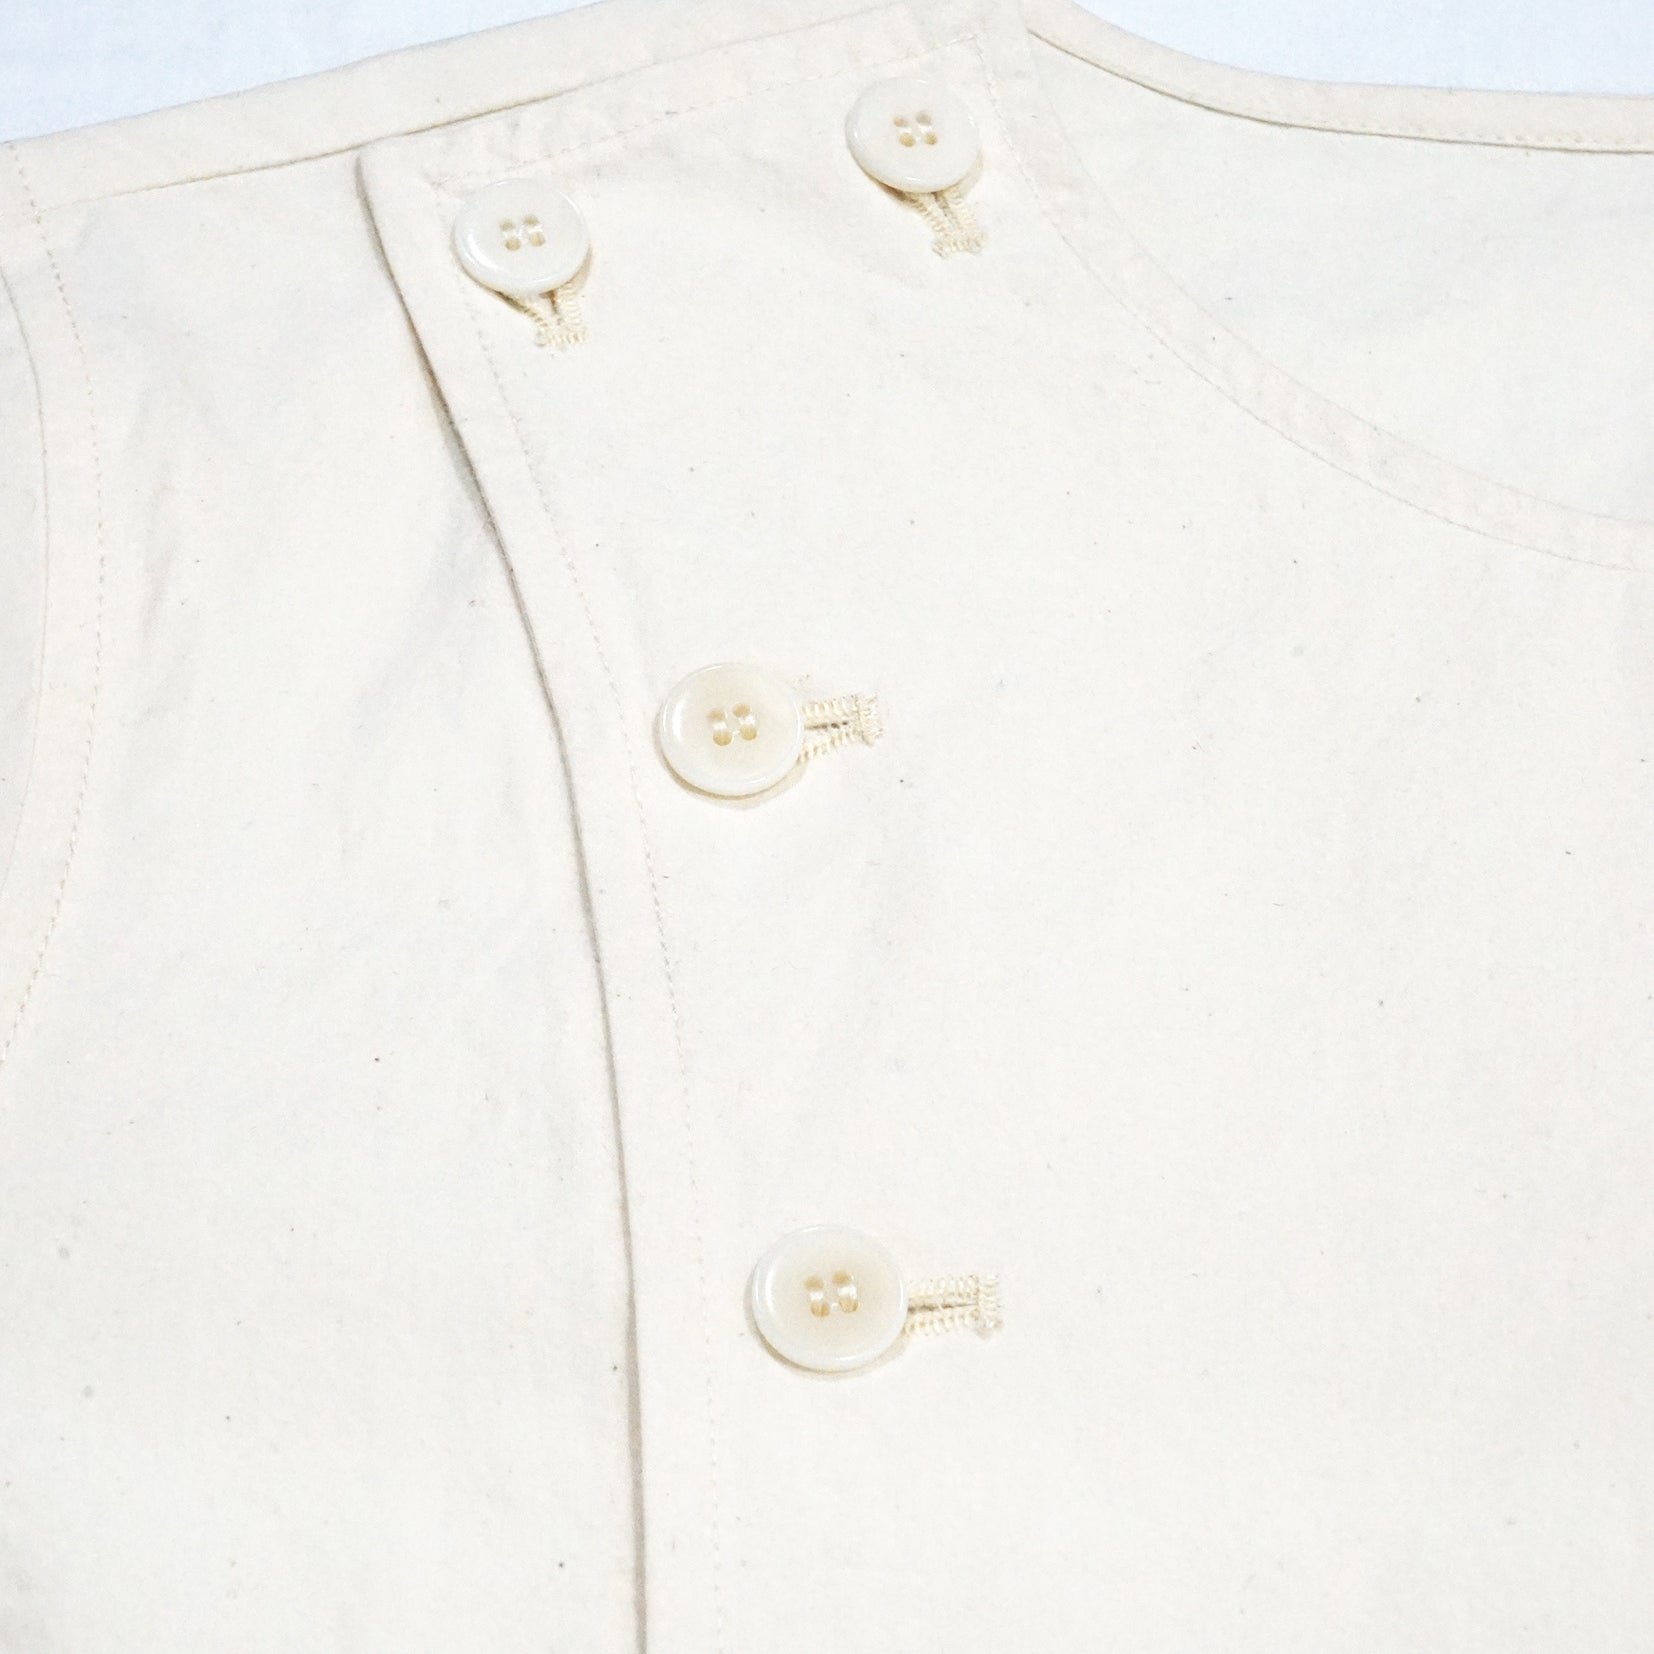 Basic pocket shirt side fly in cream white